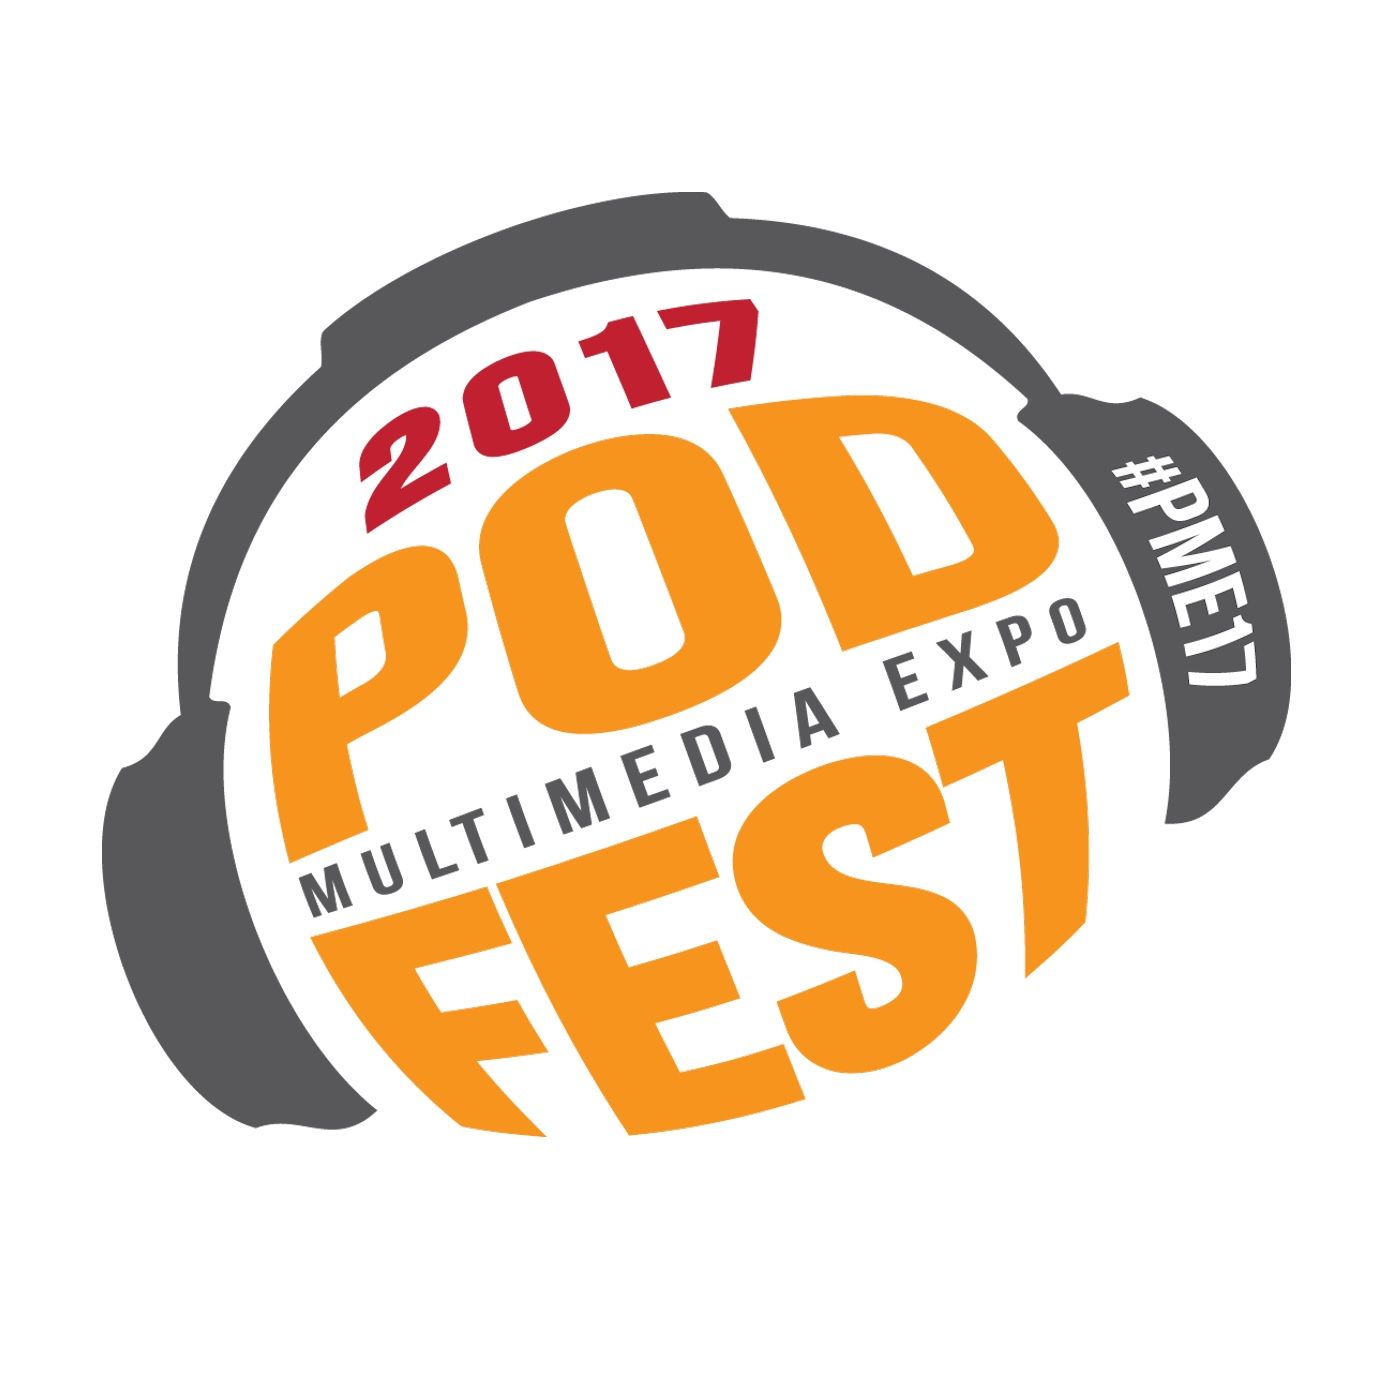 Live from Podfest Multimedia Expo - Gabe Hobbs